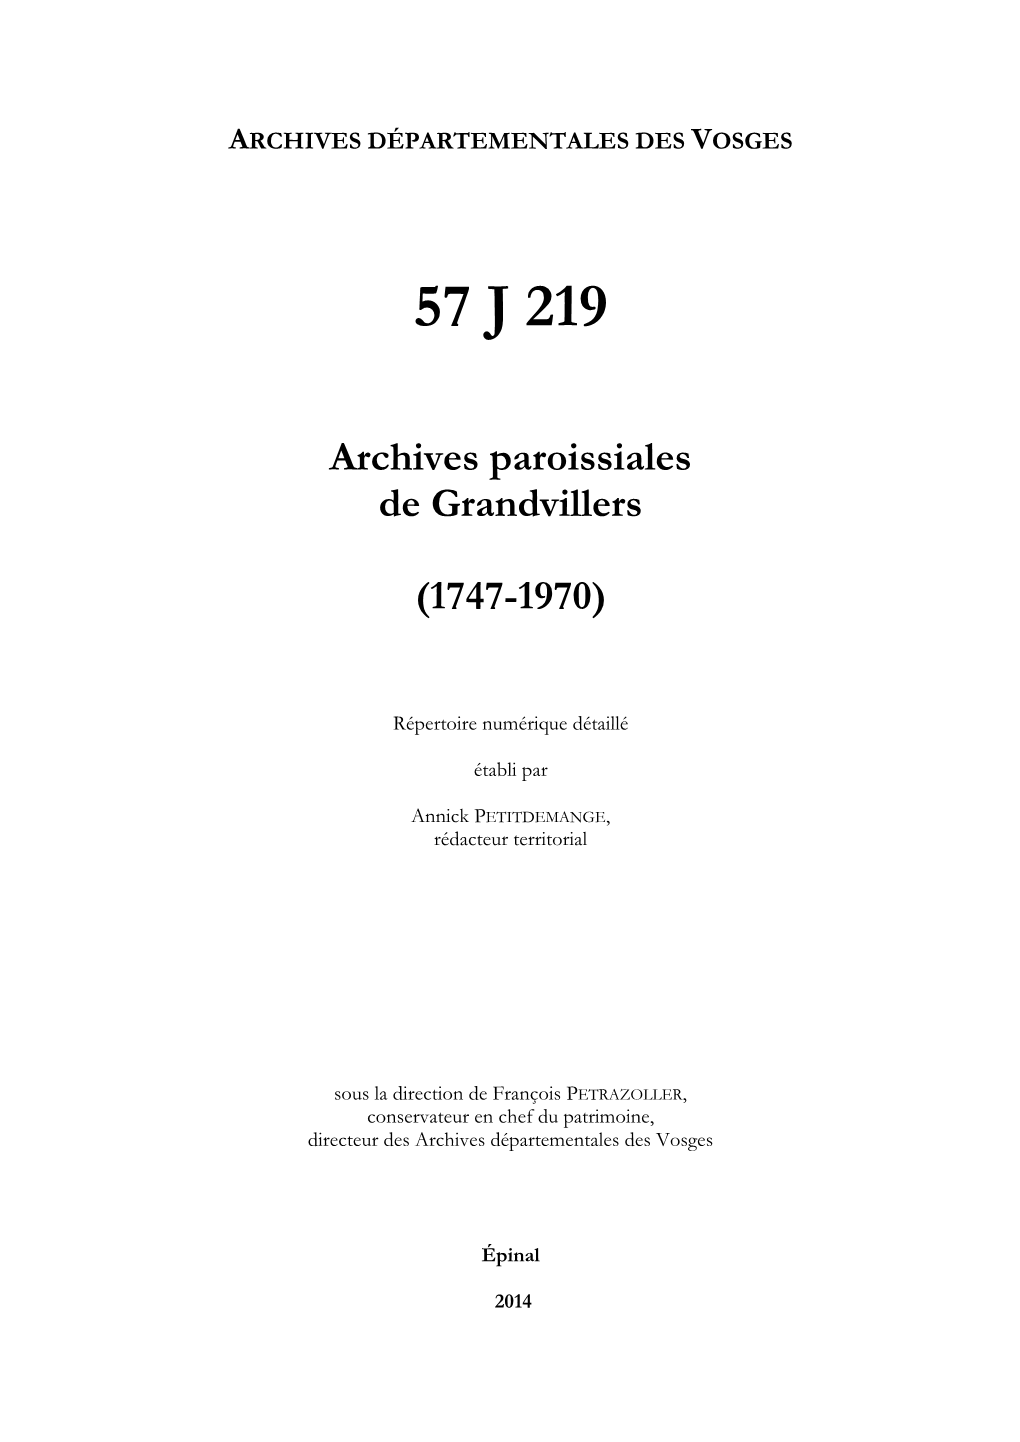 Archives De La Paroisse De Grandvillers.Pdf